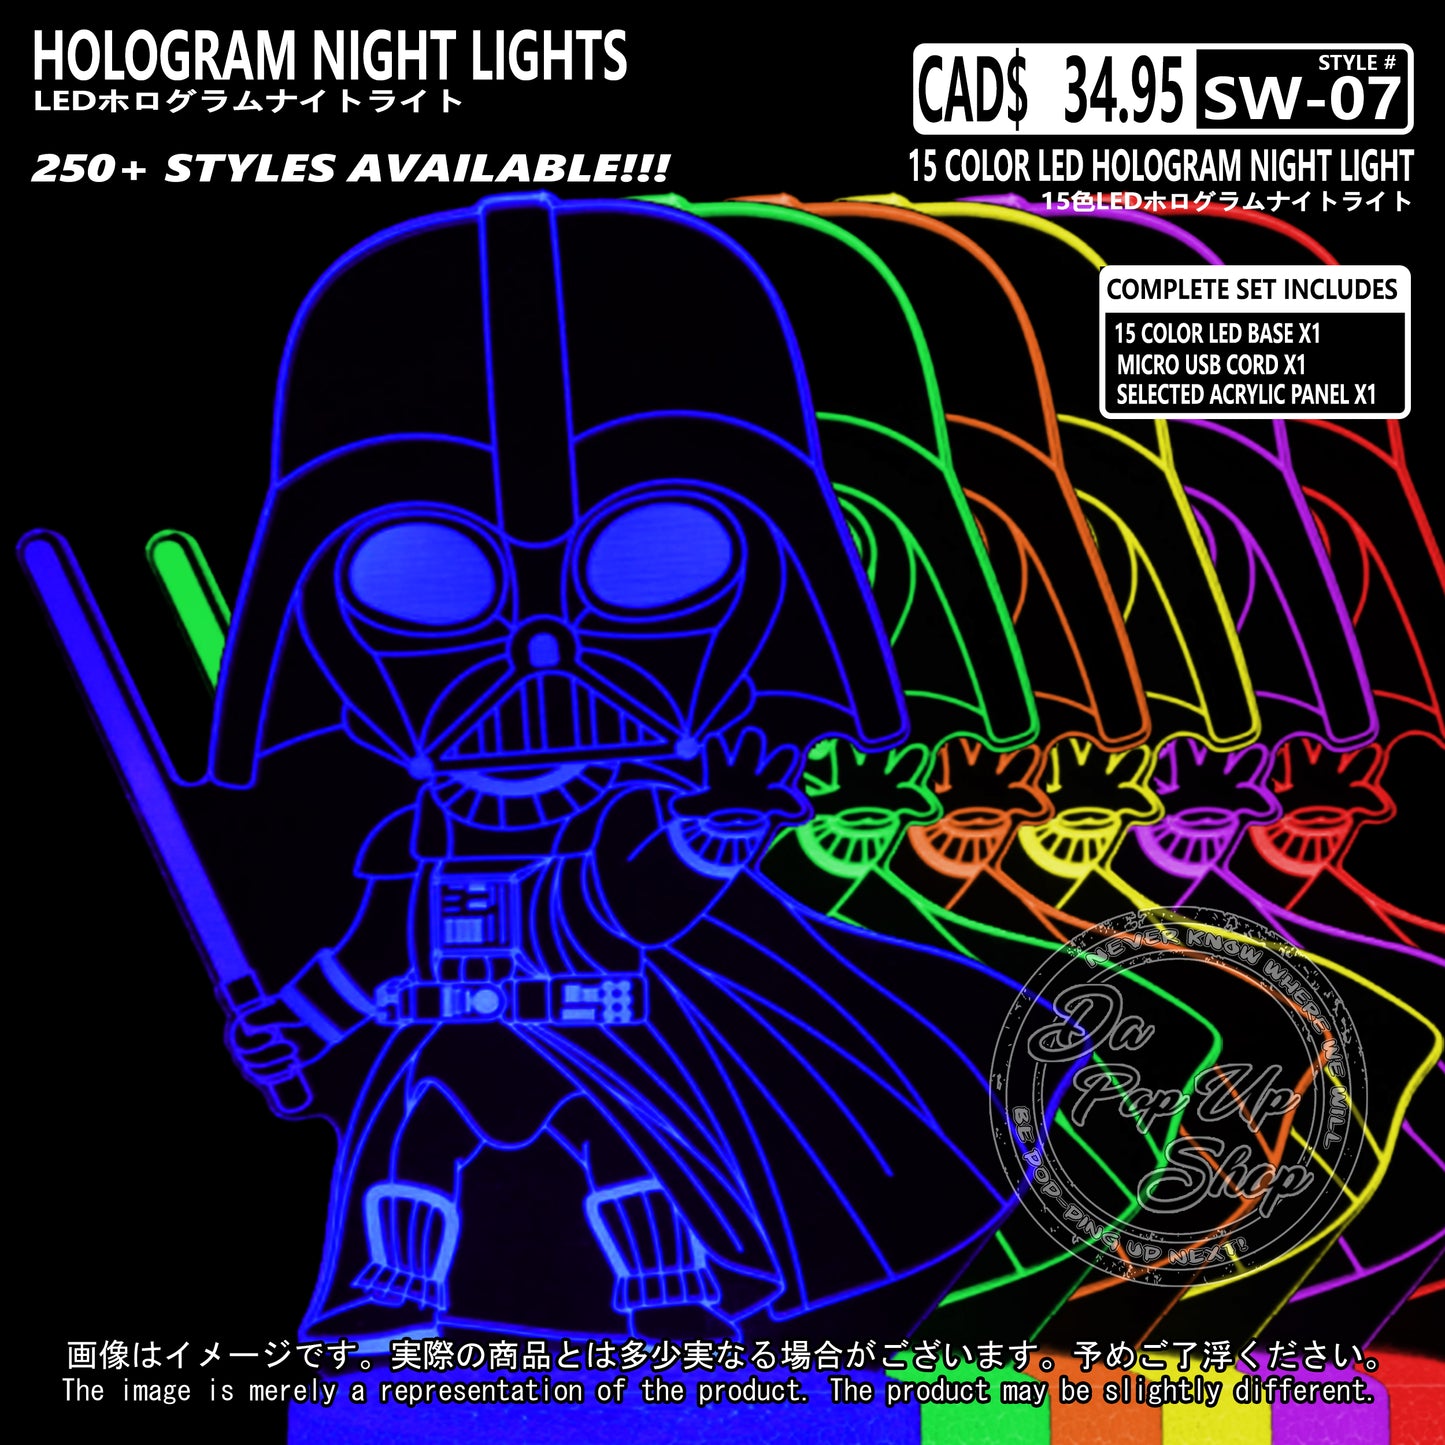 (SW-07) DARTH VADER Star Wars Hologram LED Night Light